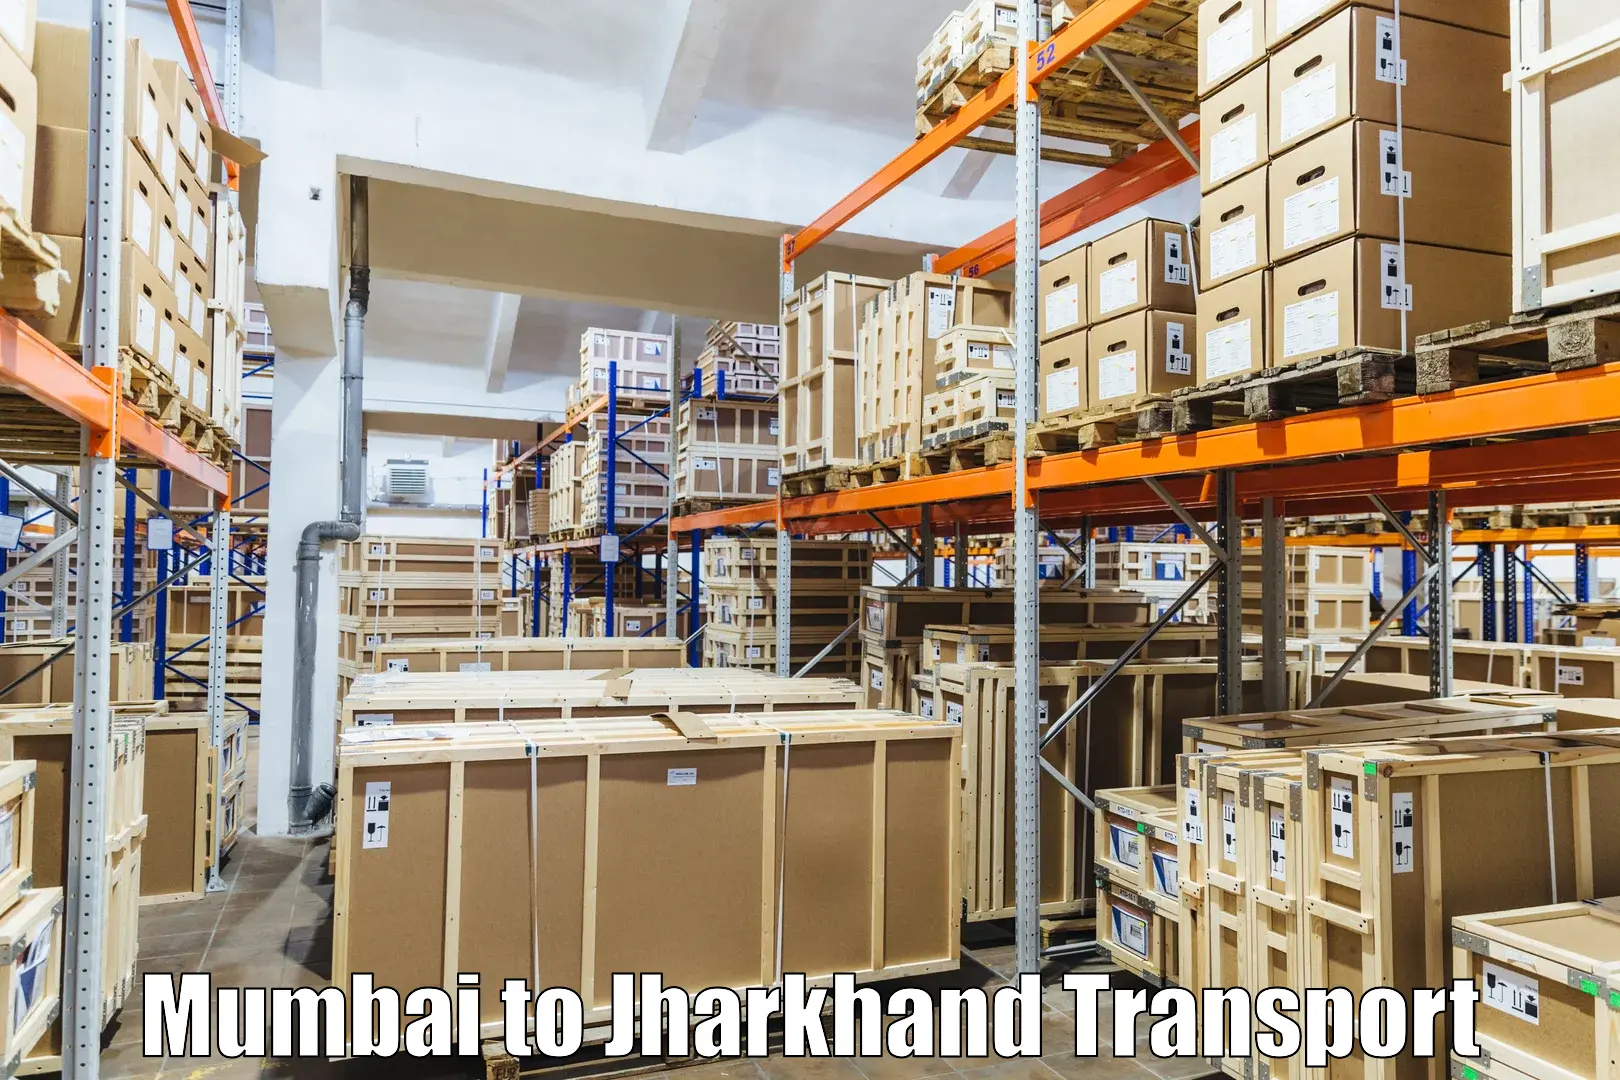 Land transport services Mumbai to Nagar Untari